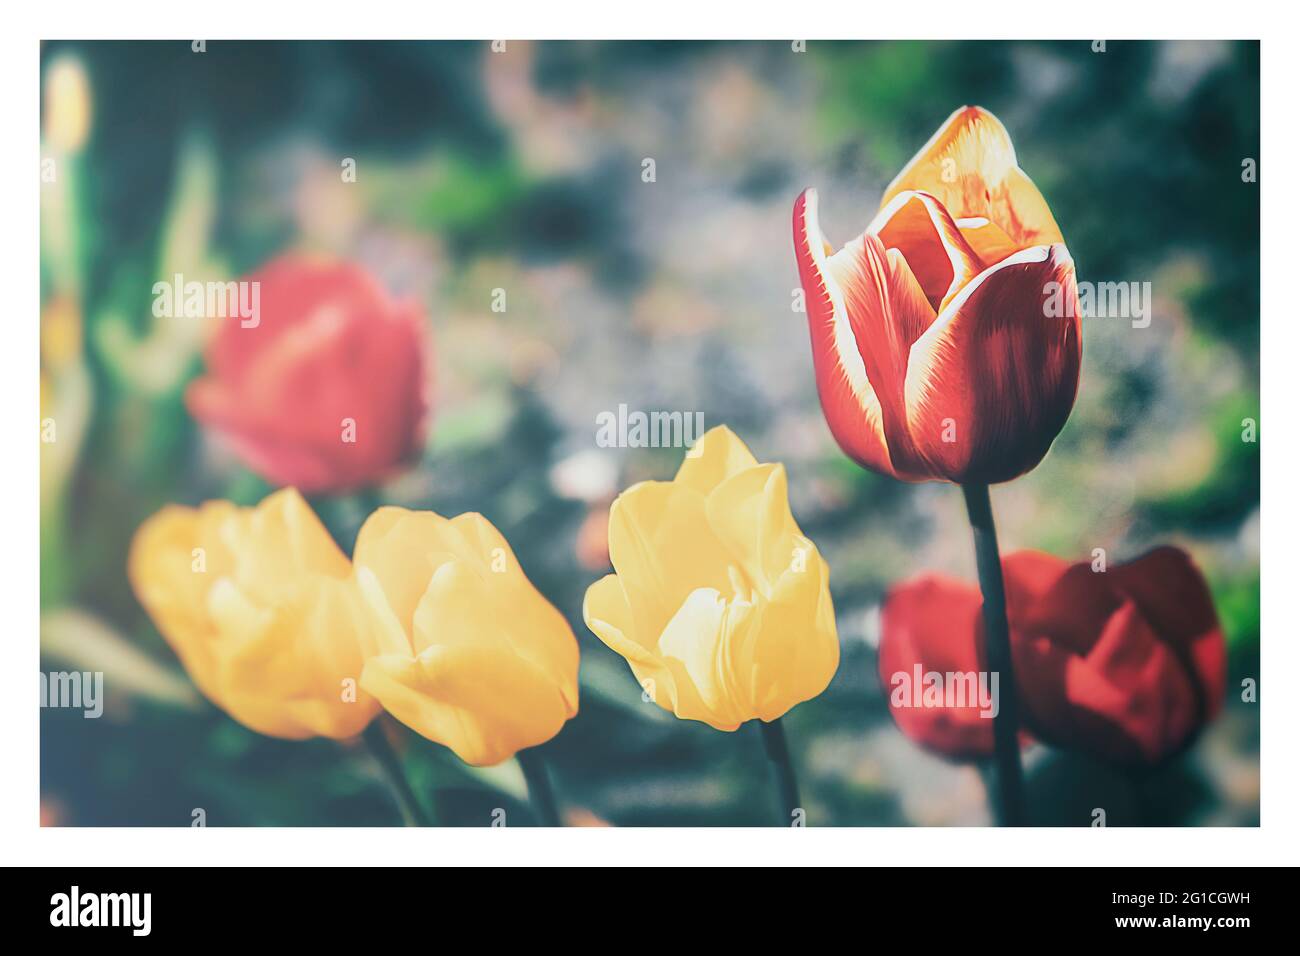 Un tocco di emozione, moody, colorato e bellissimo fiorito di tulipani nell'aldilà. Gruga Park Essen. Tristezza e solitudine. Foto Stock